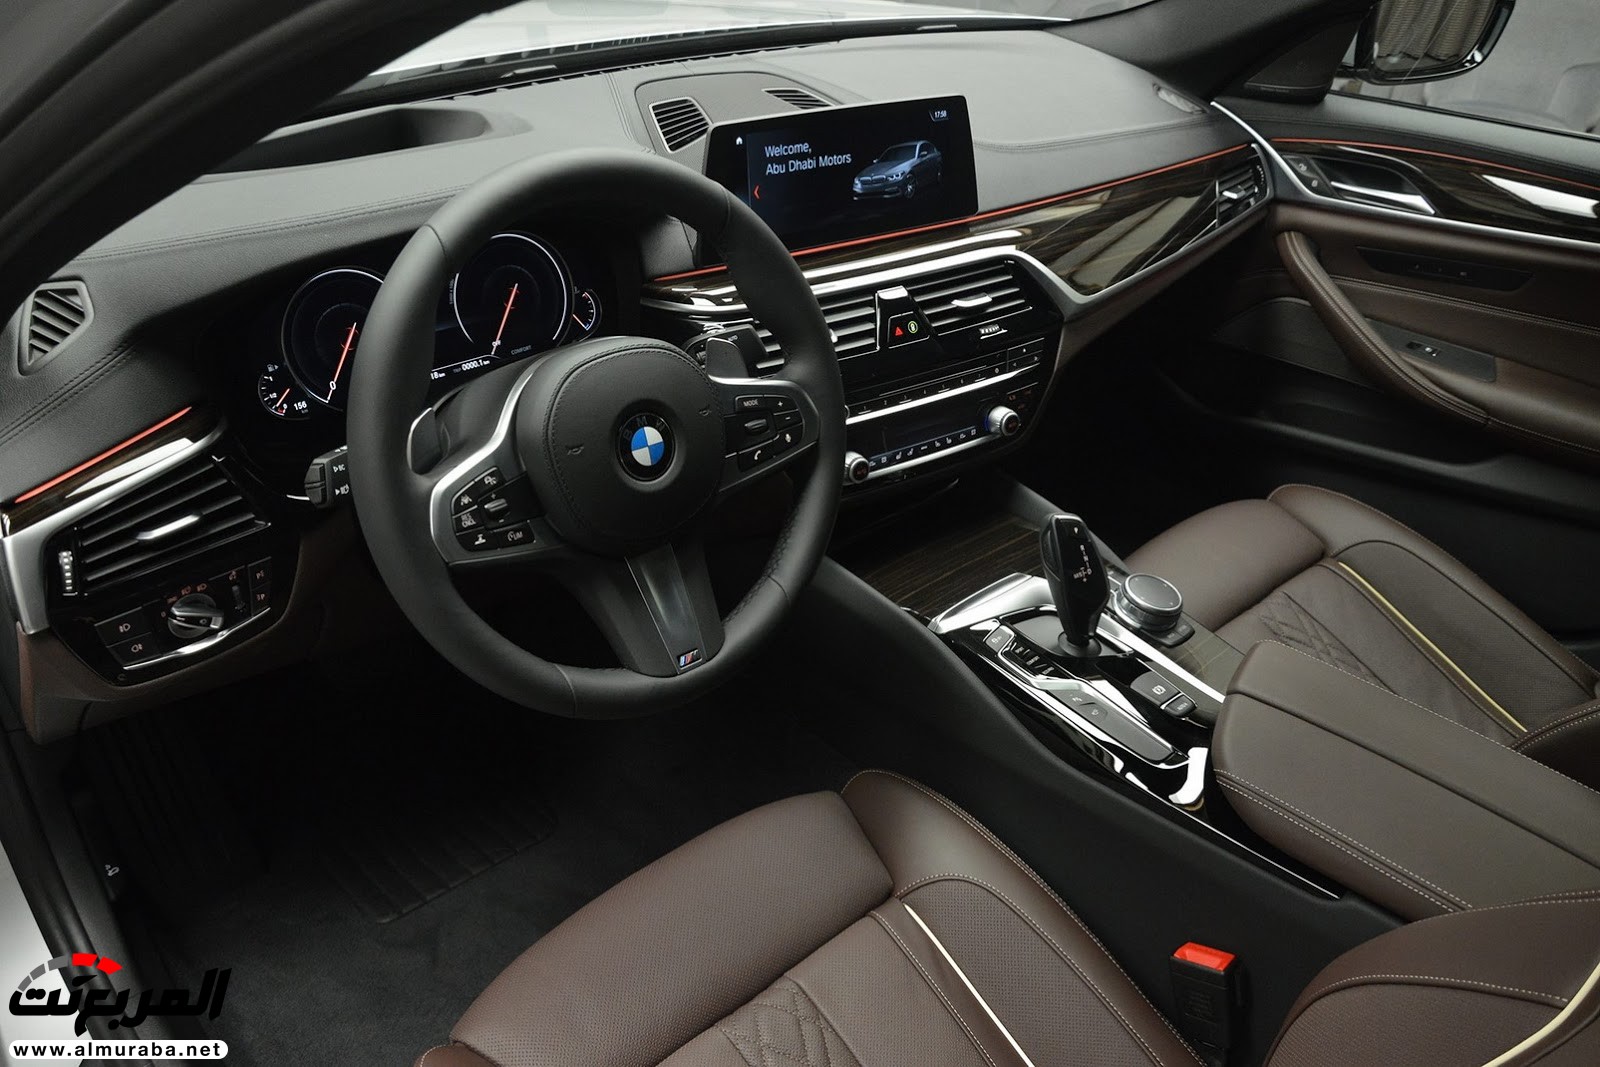 "بي إم دبليو" 540i الجديدة كلياً بتعديلات سبورت لاين معروضة بأبو ظبي BMW 12